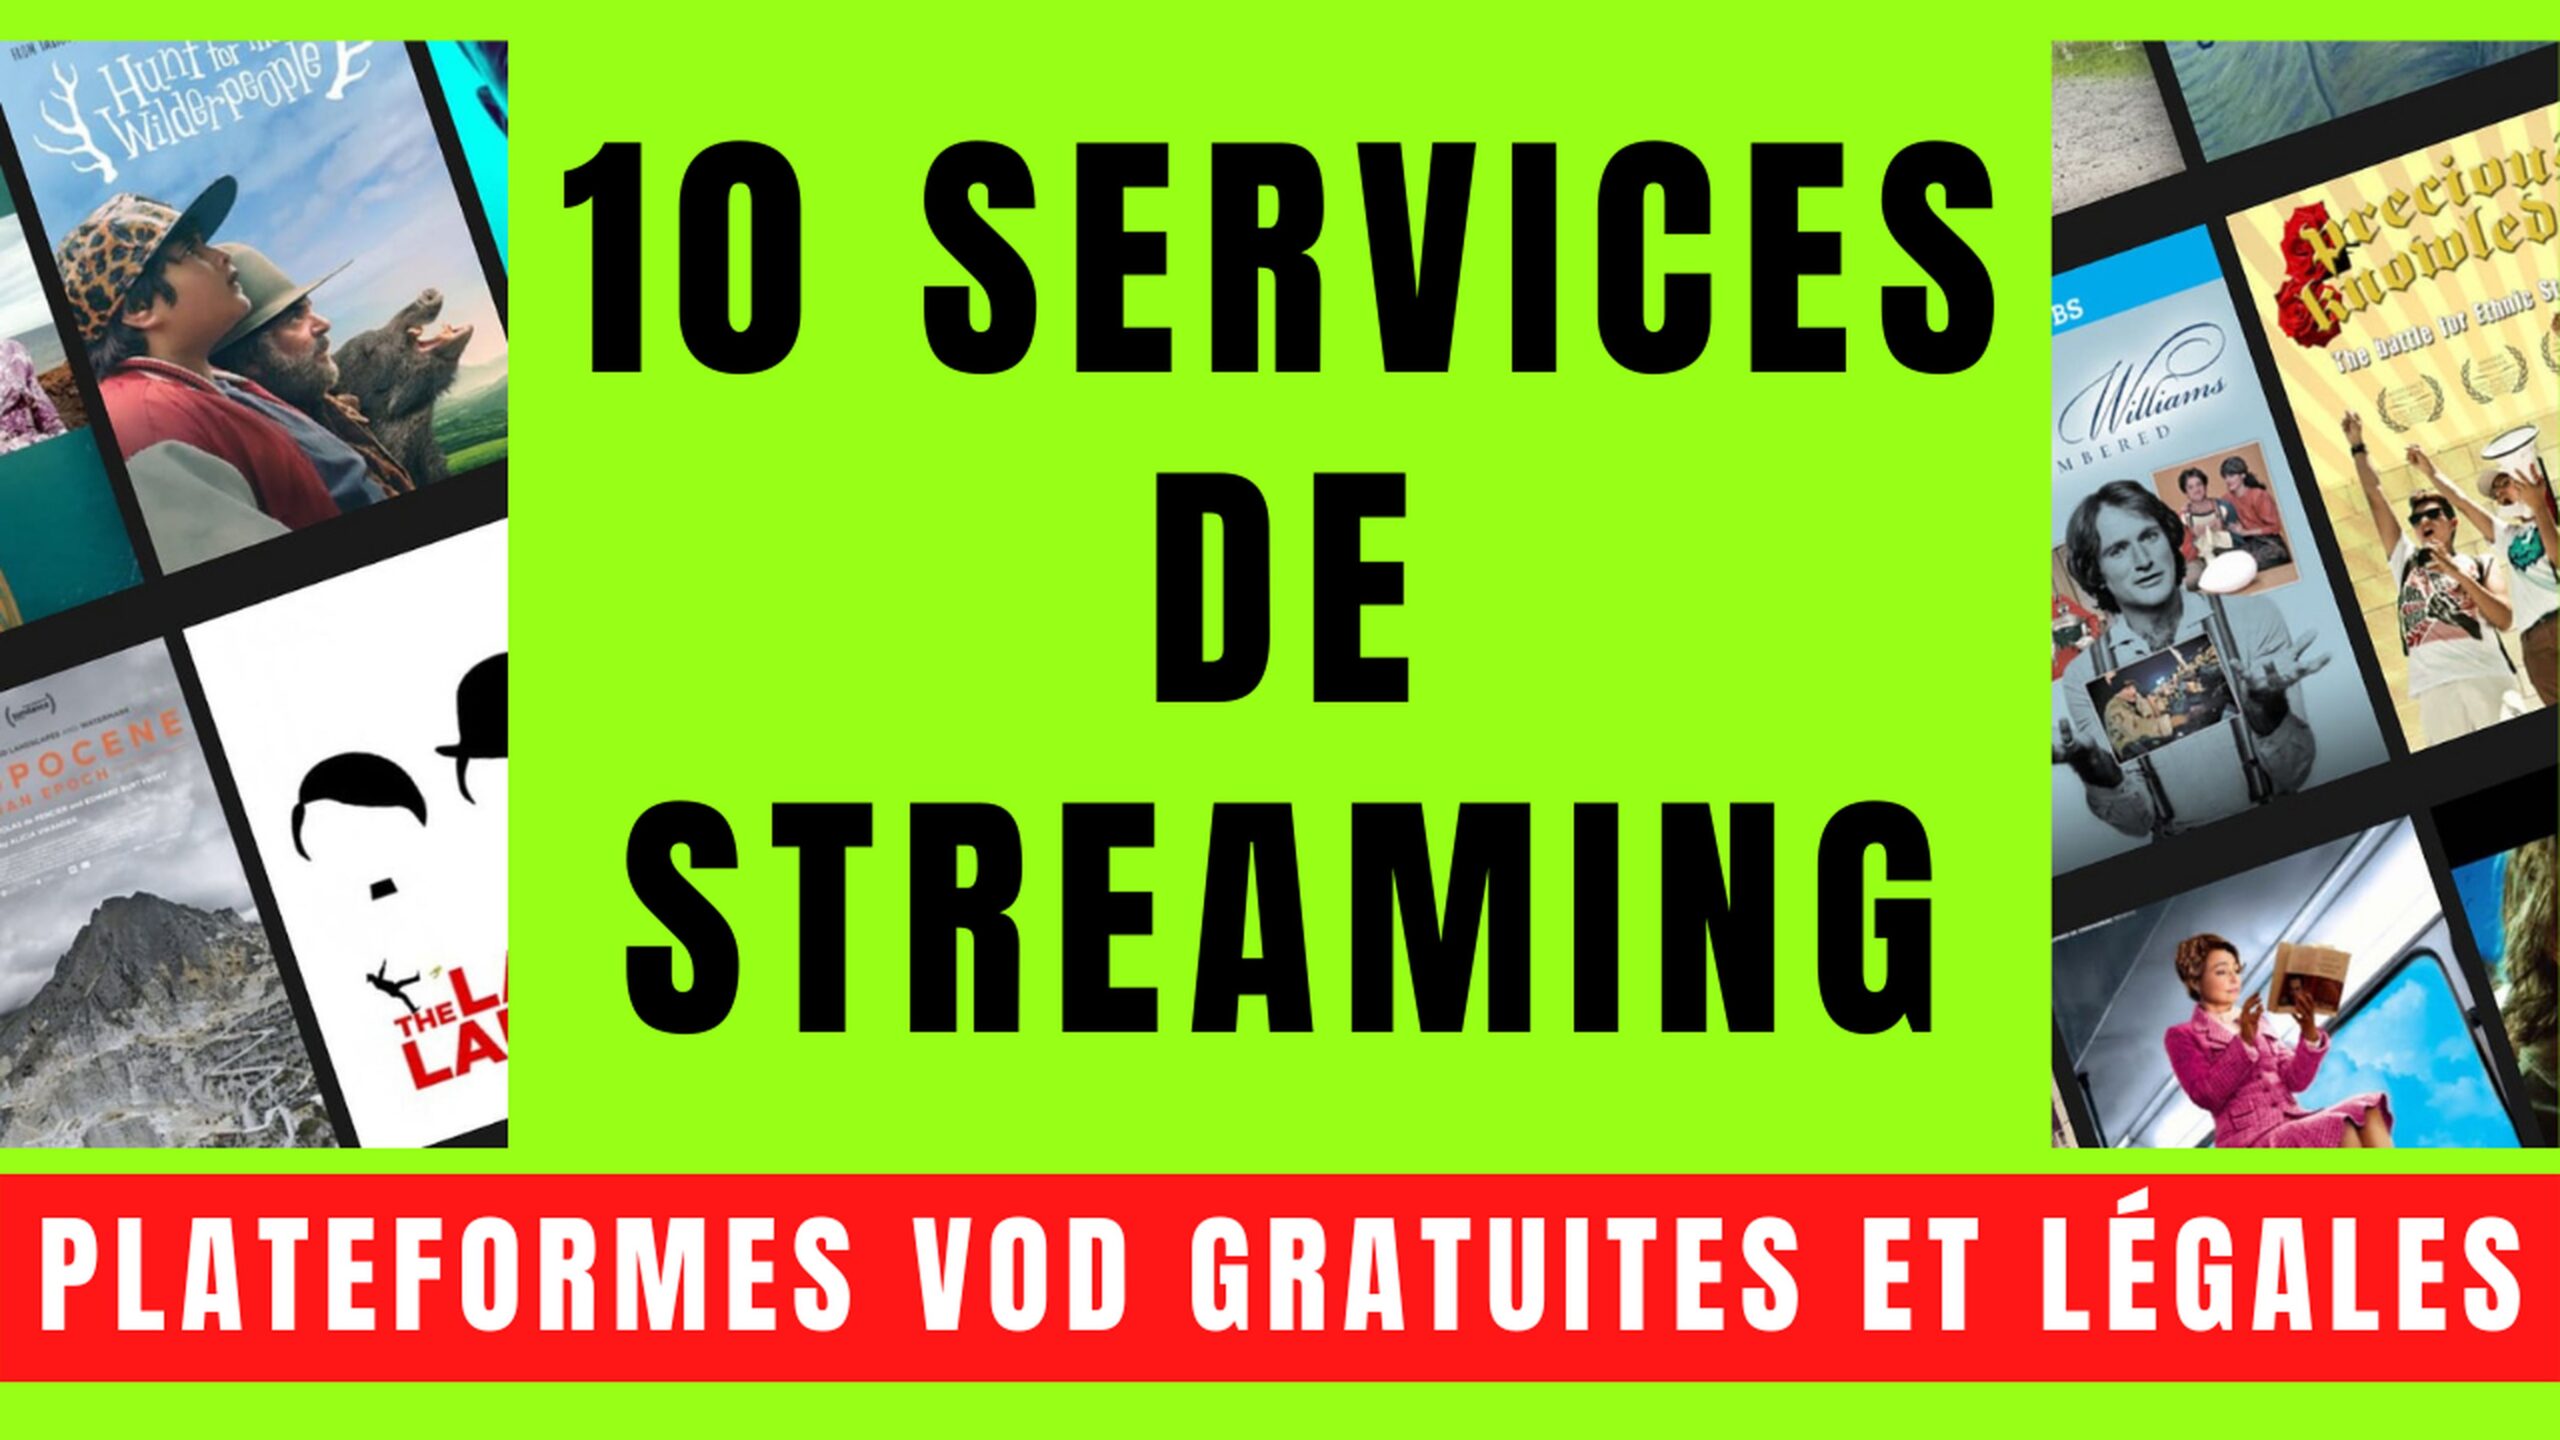 10 SERVICES VOD avec STREAMING GRATUIT et LÉGAL 25